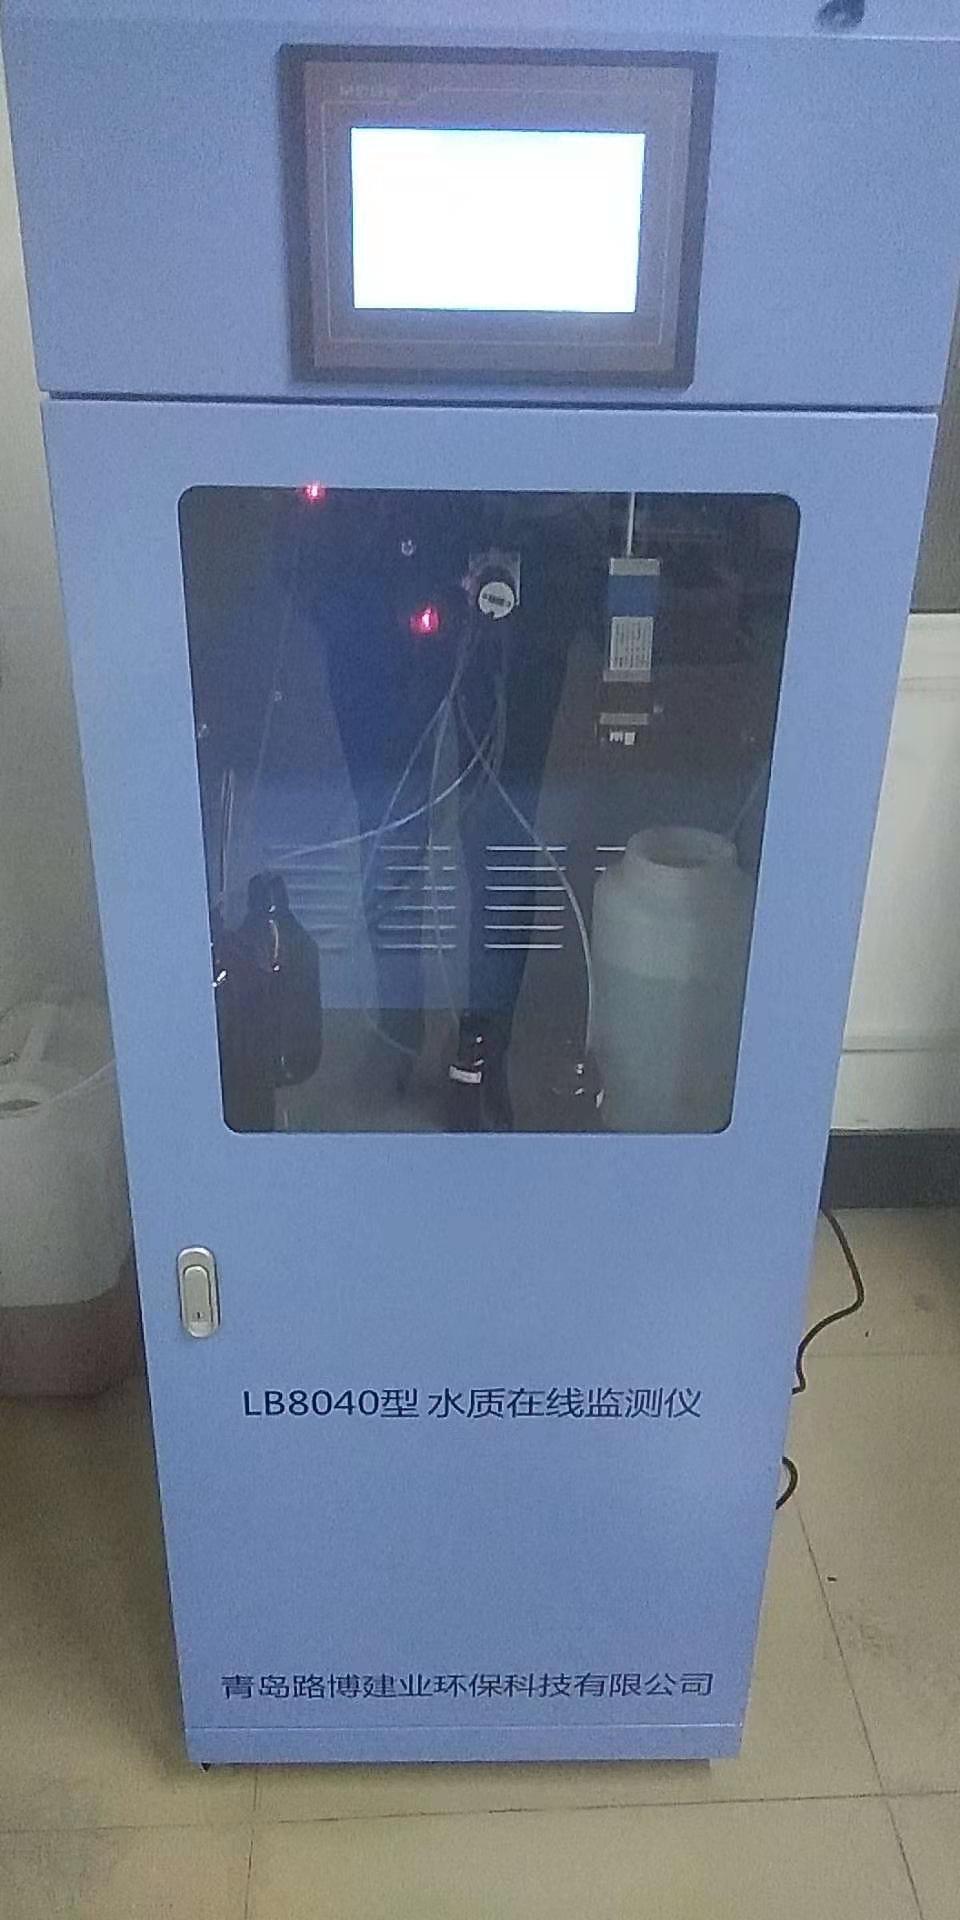 路博在线污水氨氮监测仪LB-8040-2